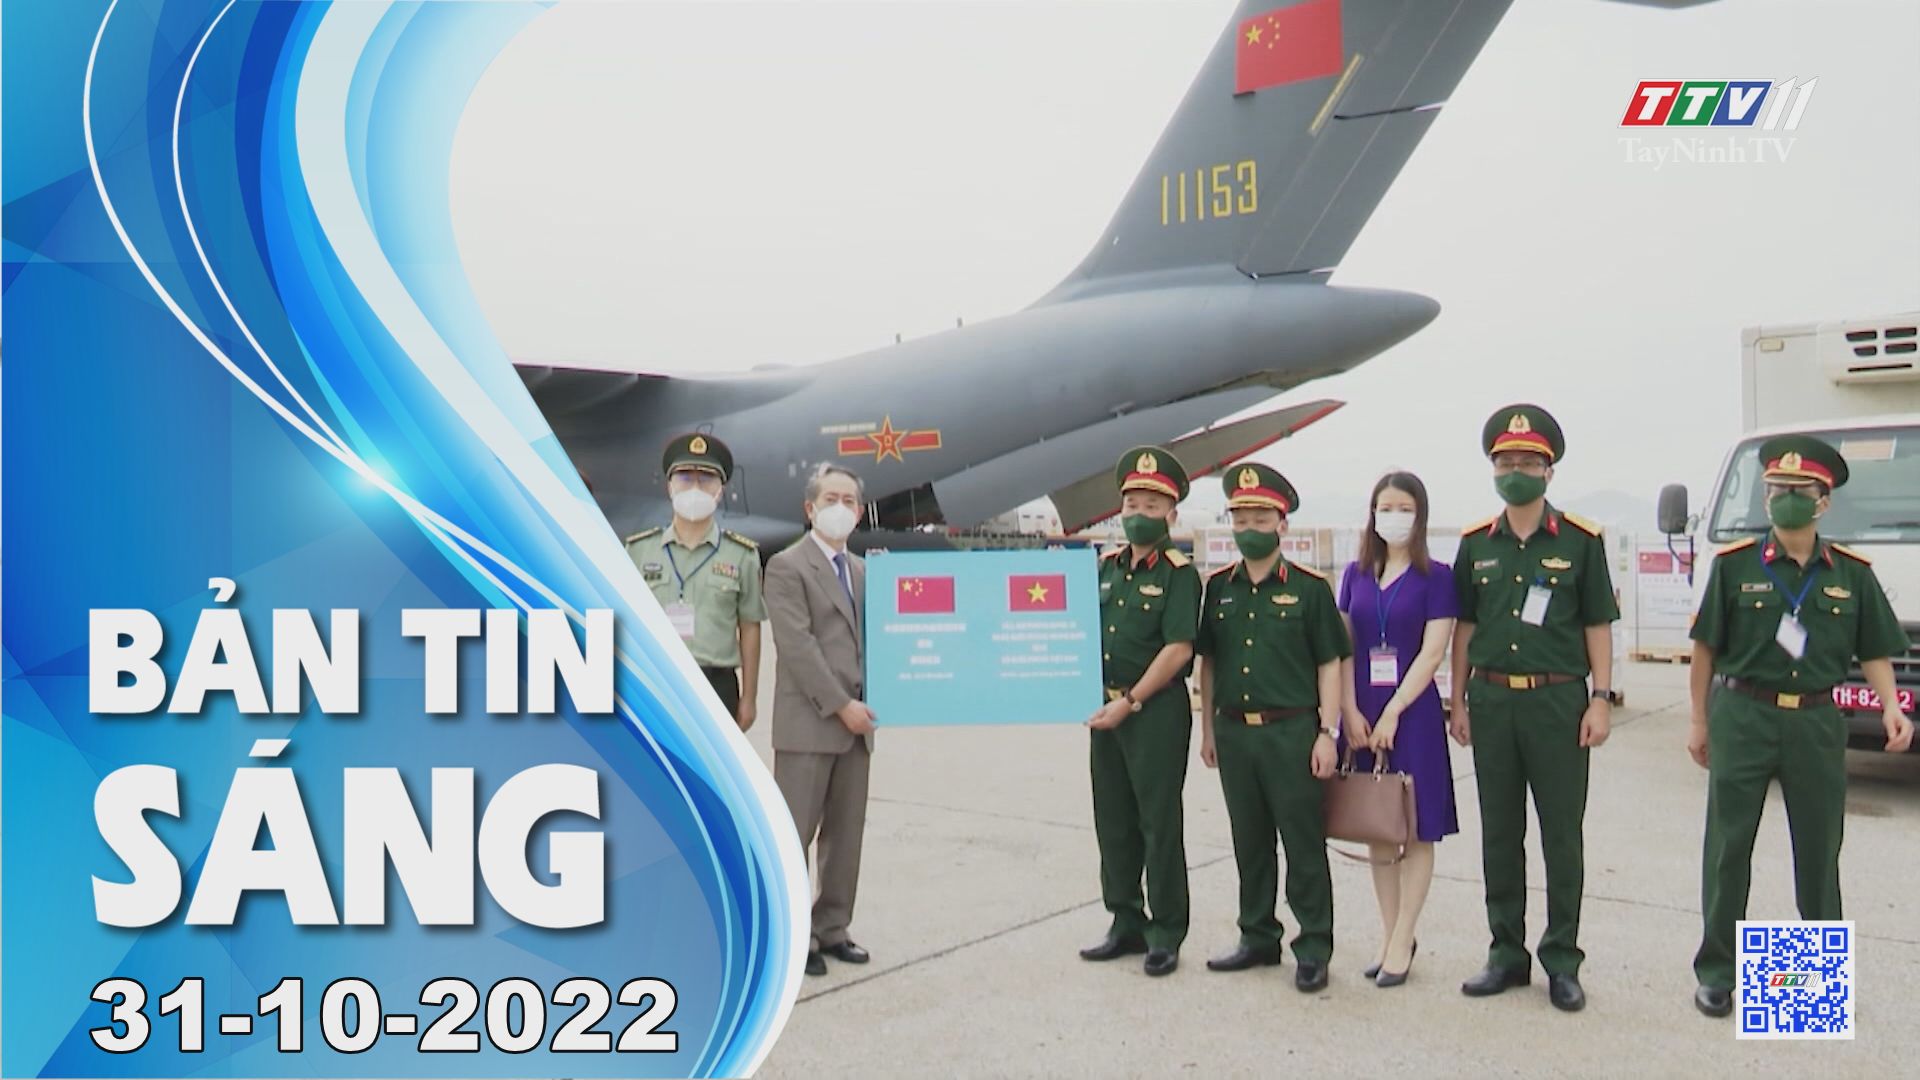 Bản tin sáng 31-10-2022 | Tin tức hôm nay | TayNinhTV